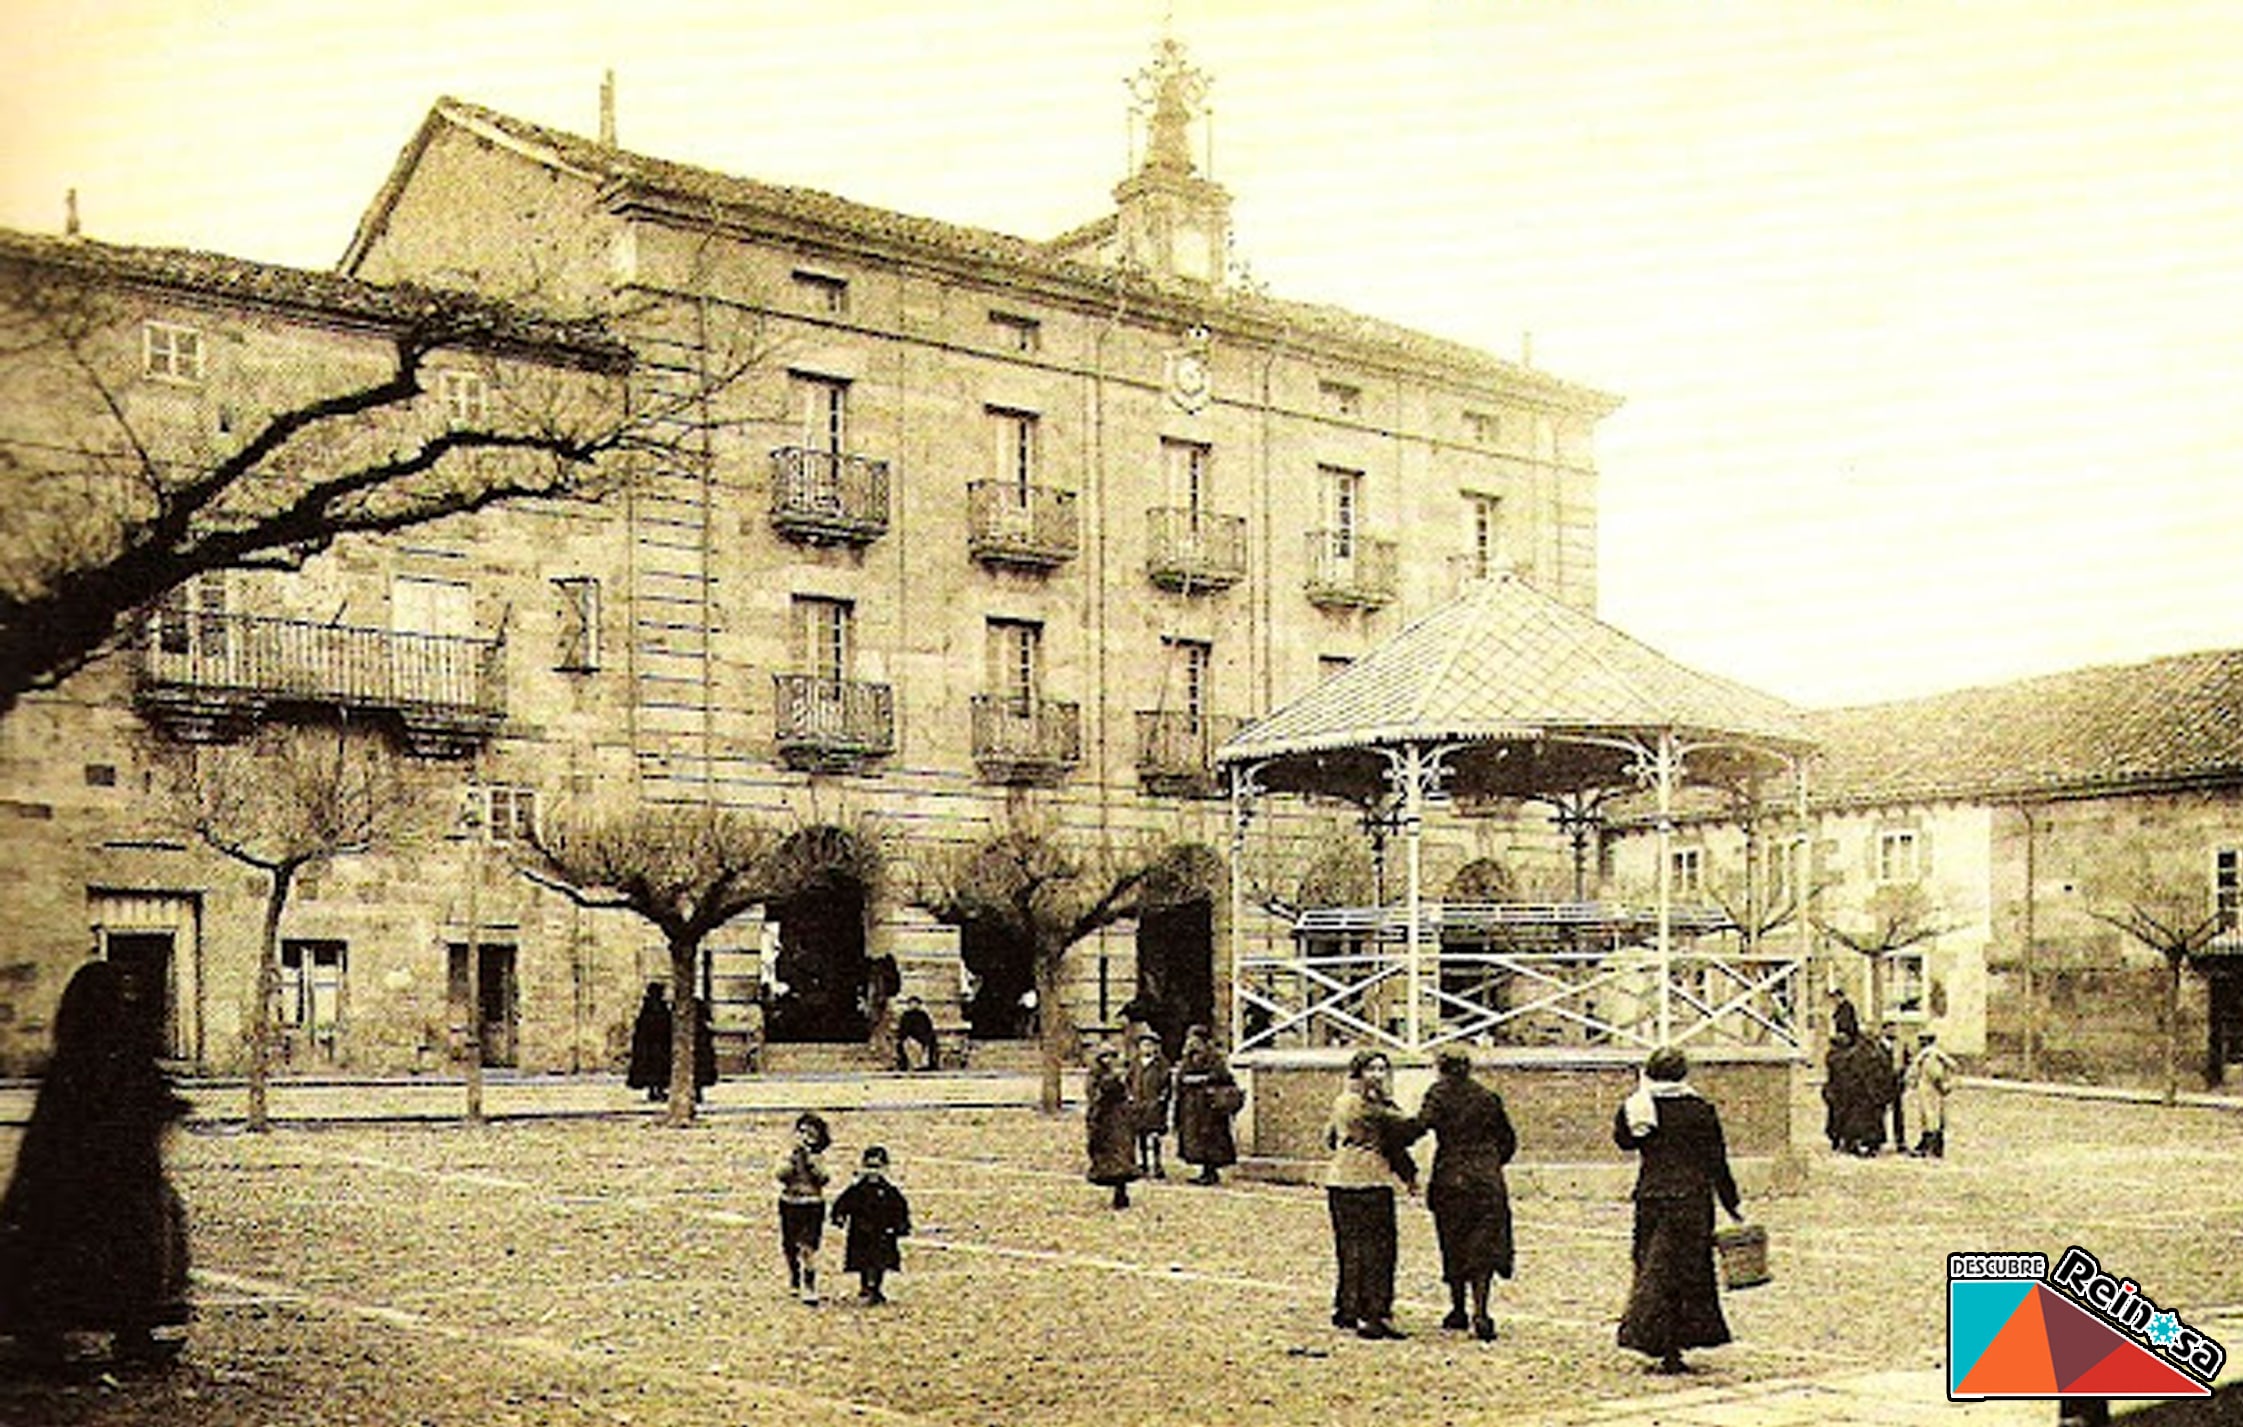 Plaza del Ayuntamiento concurrida